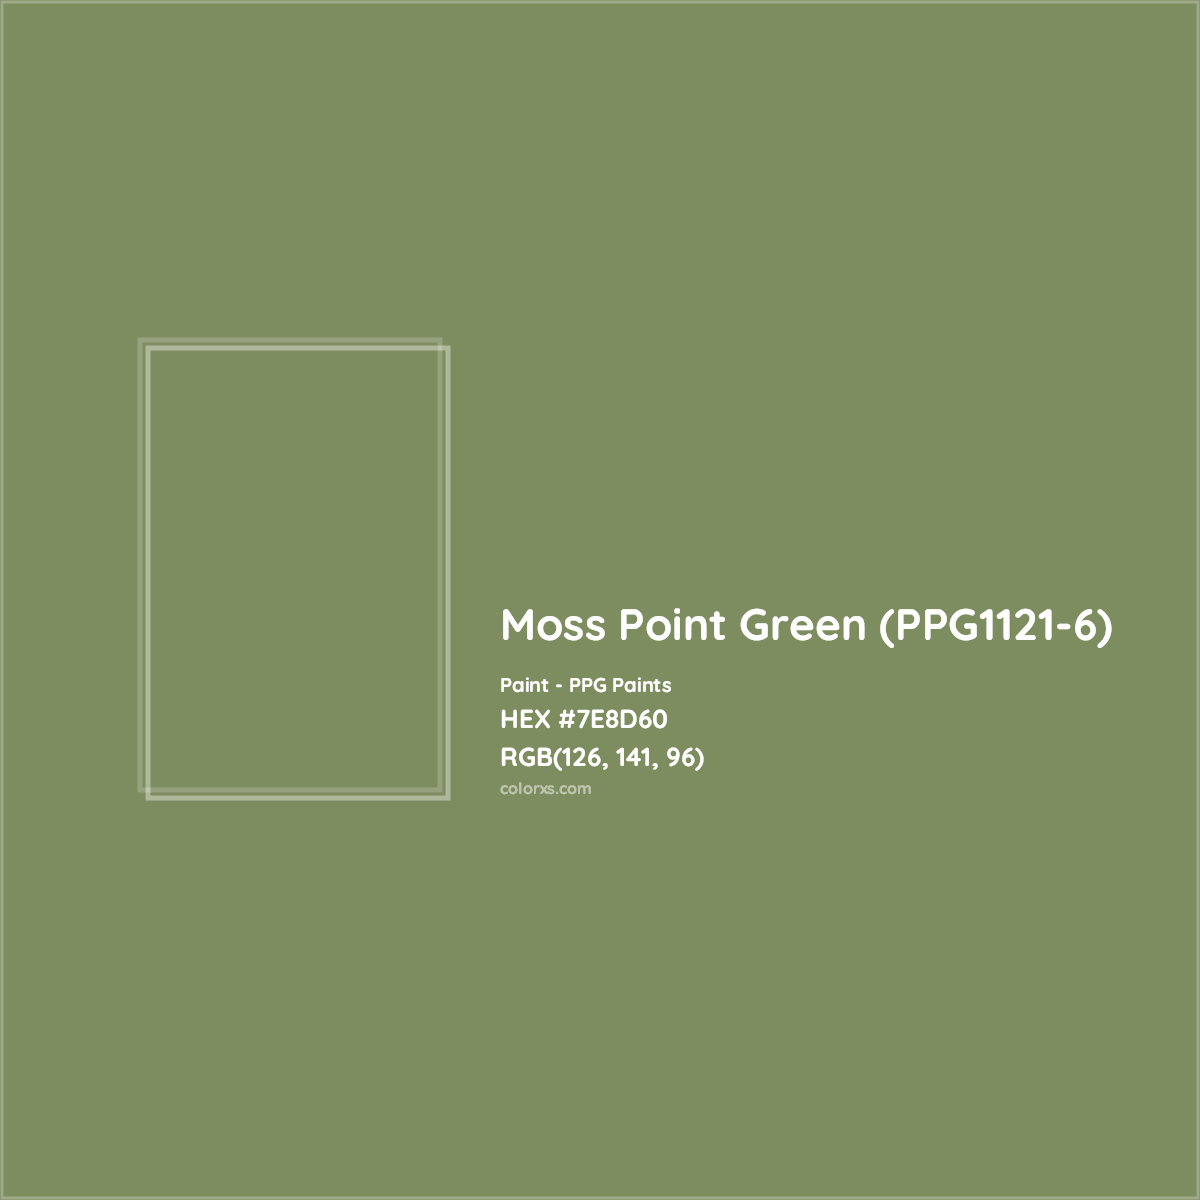 HEX #7E8D60 Moss Point Green (PPG1121-6) Paint PPG Paints - Color Code